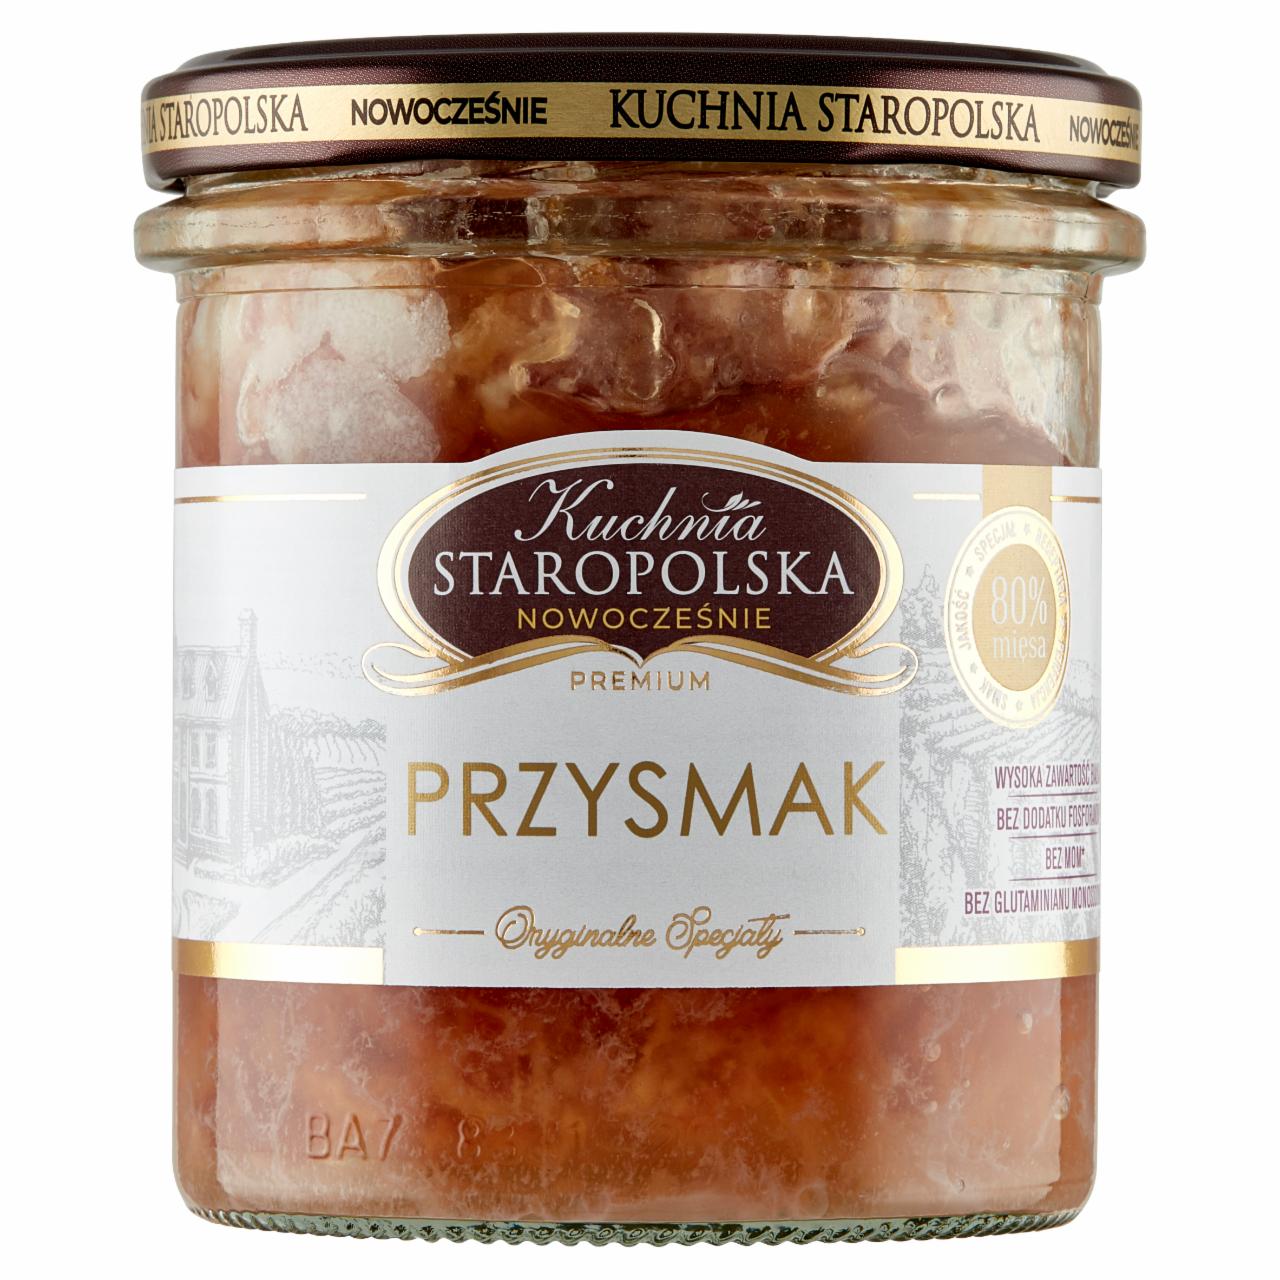 Zdjęcia - Kuchnia Staropolska Premium Przysmak 300 g